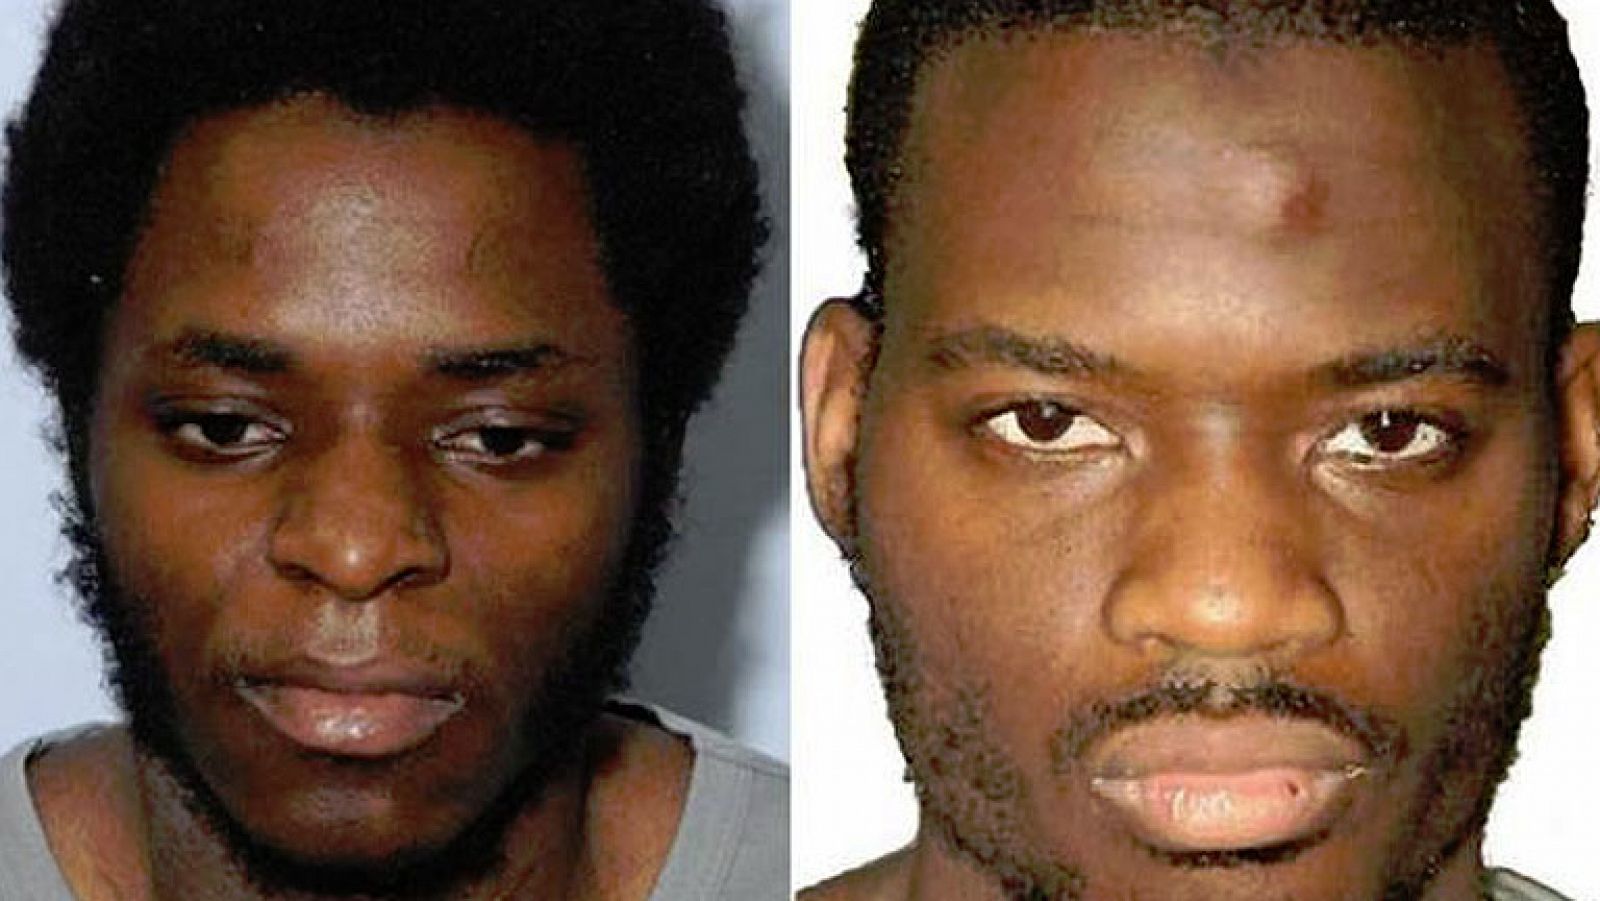  El islamista Michael Adebolajo ha sido condenado este miércoles a cadena perpetua no revisable y su compañero Michael Adebowale, a un mínimo de 45 años de cárcel, por el asesinato a cuchilladas del soldado inglés Lee Rigby el 22 de mayo de 2013 en una calle de Londres.